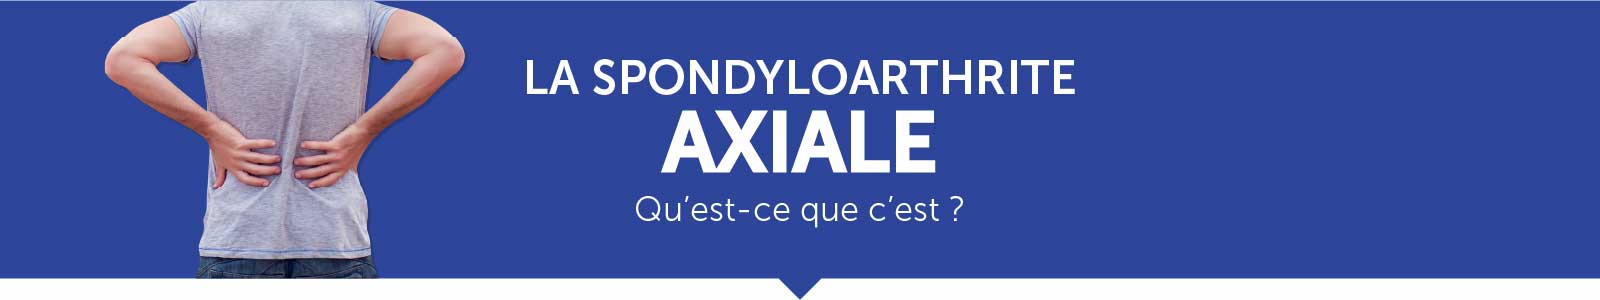 La spondyloarthrite axiale, qu'est-ce que c'est ? 